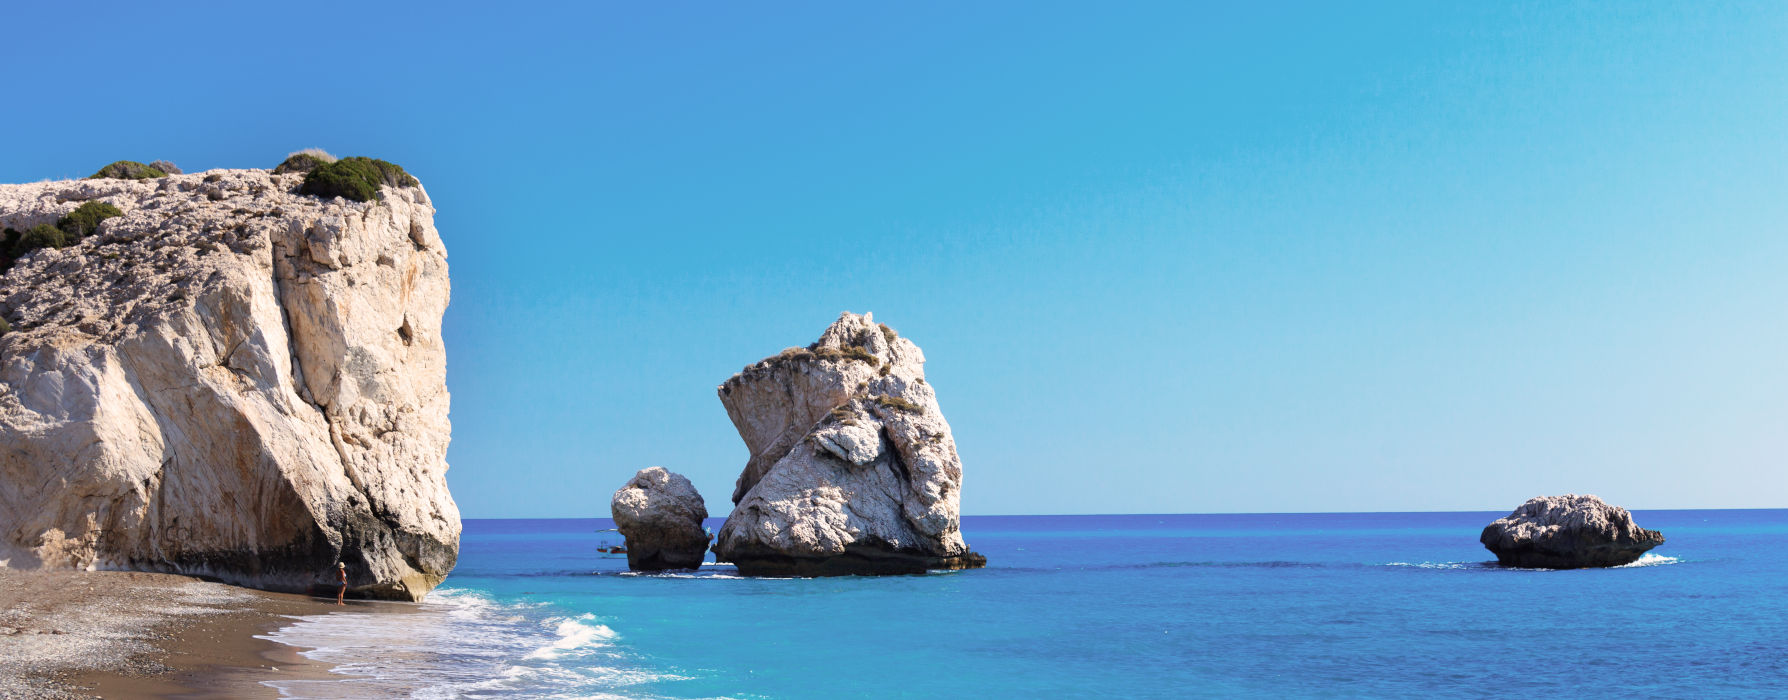 Our Cyprus<br class="hidden-md hidden-lg" /> holidays